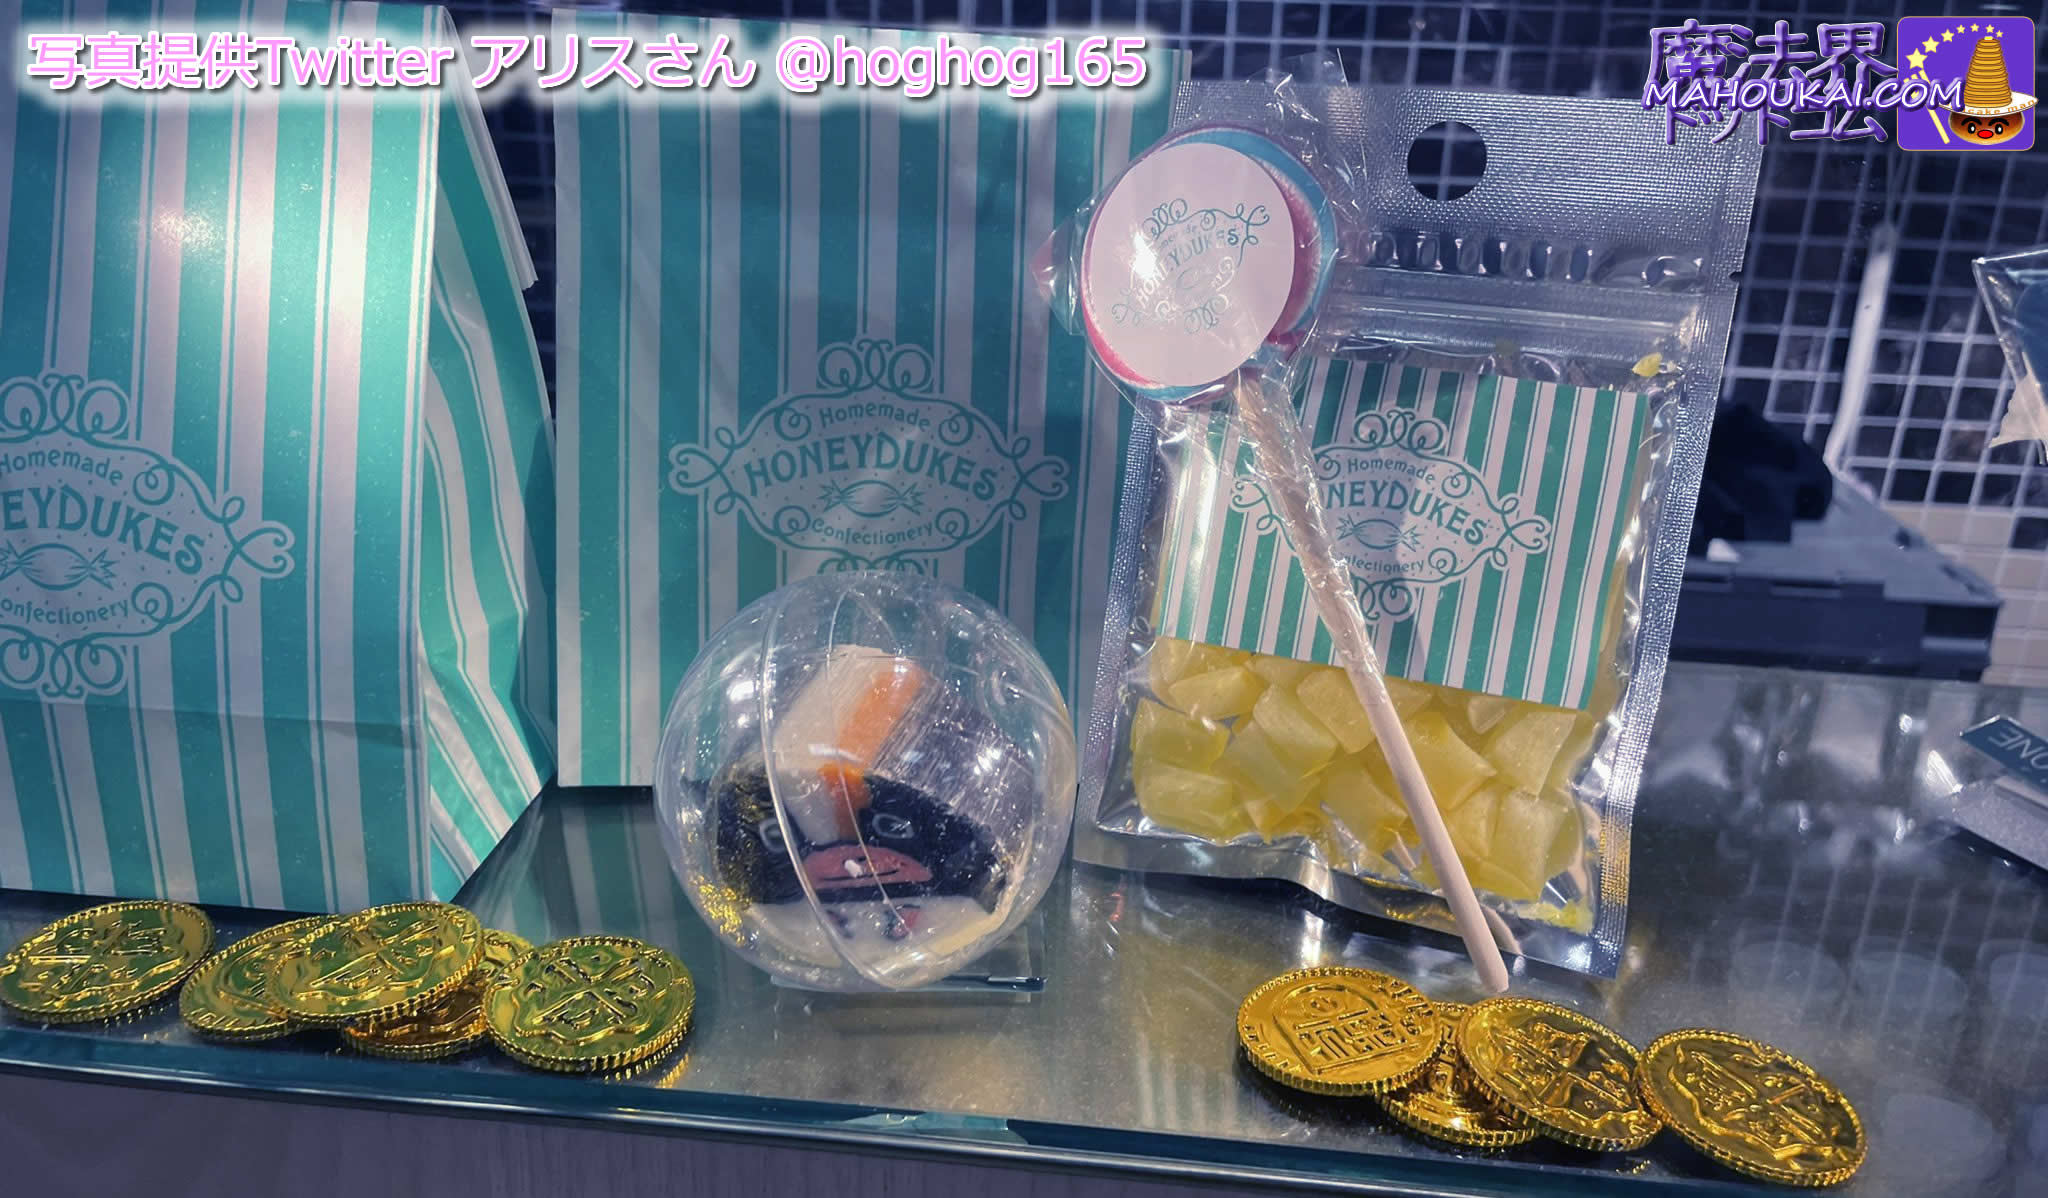 マホウドコロ新宿ではハニーデュークスのキャンデーを発売 ハニーデュークス キャンディセット　価格1200円！ 